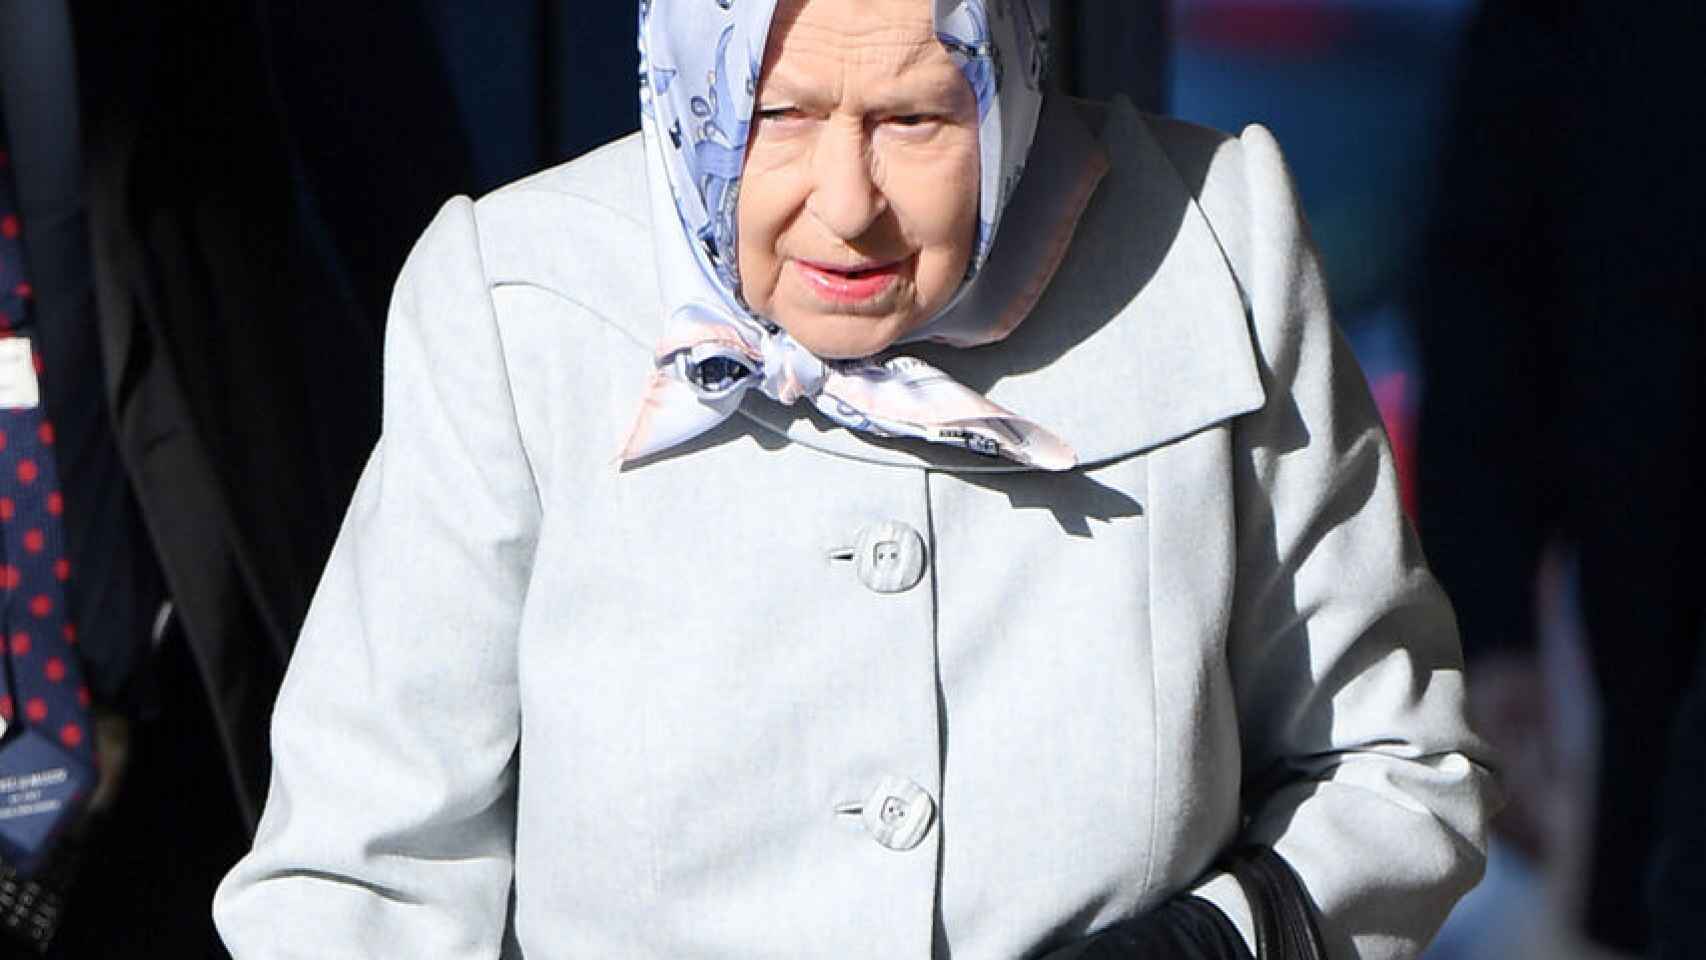 La Reina ha suspendido todos sus actos públicos por precaución ante la pandemia.